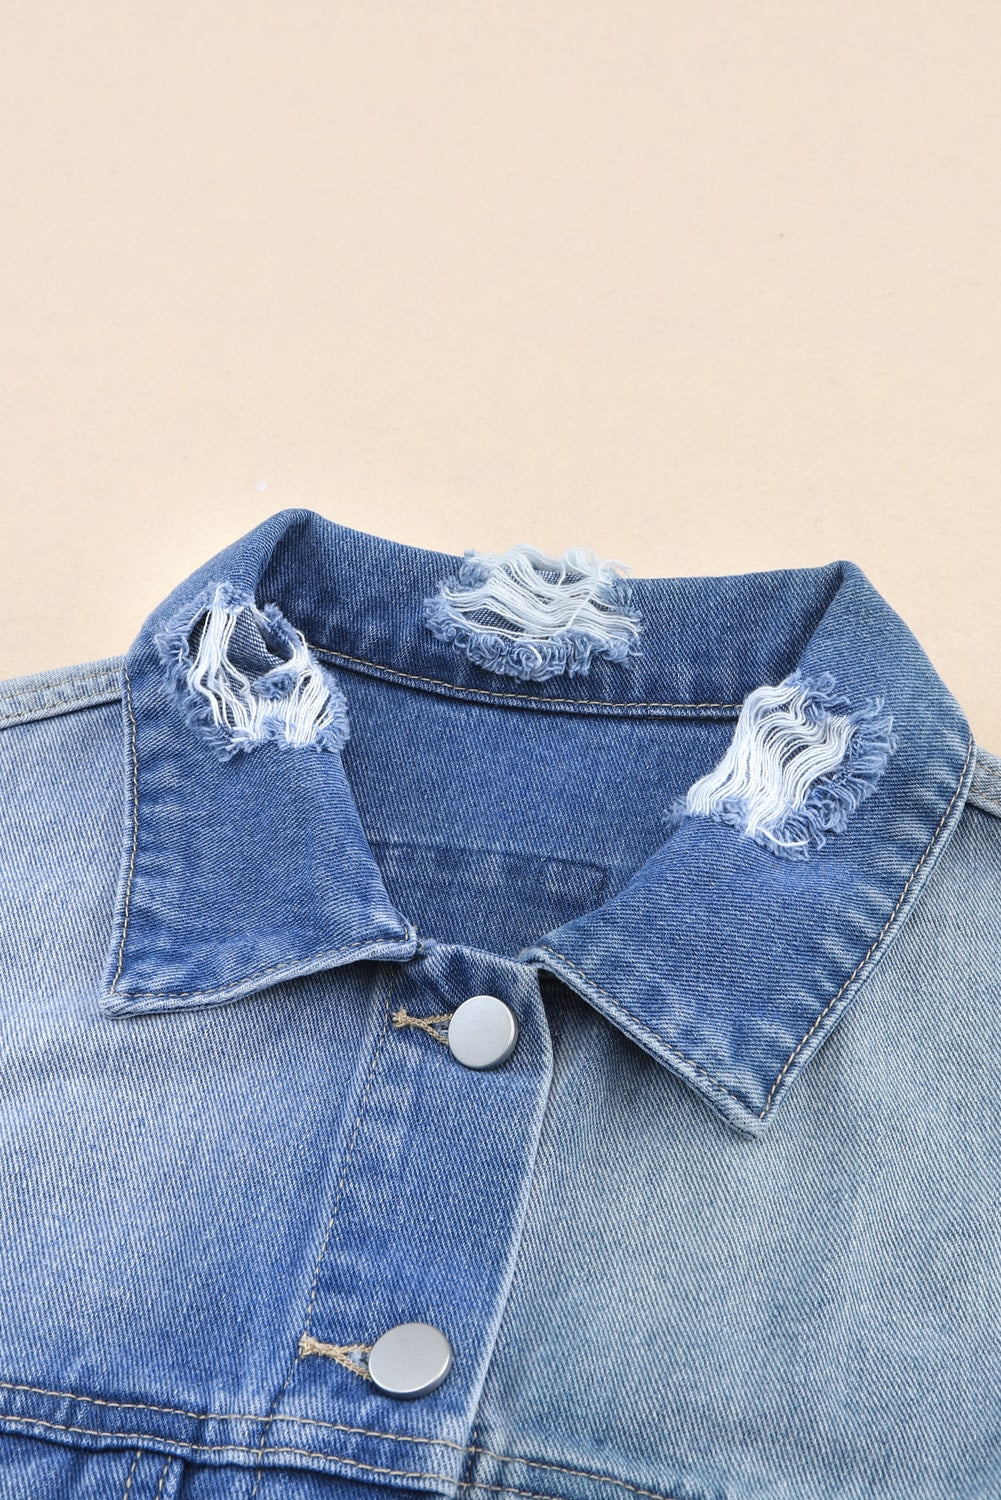 Veste en jean bleu ciel avec ourlet effiloché et patchwork